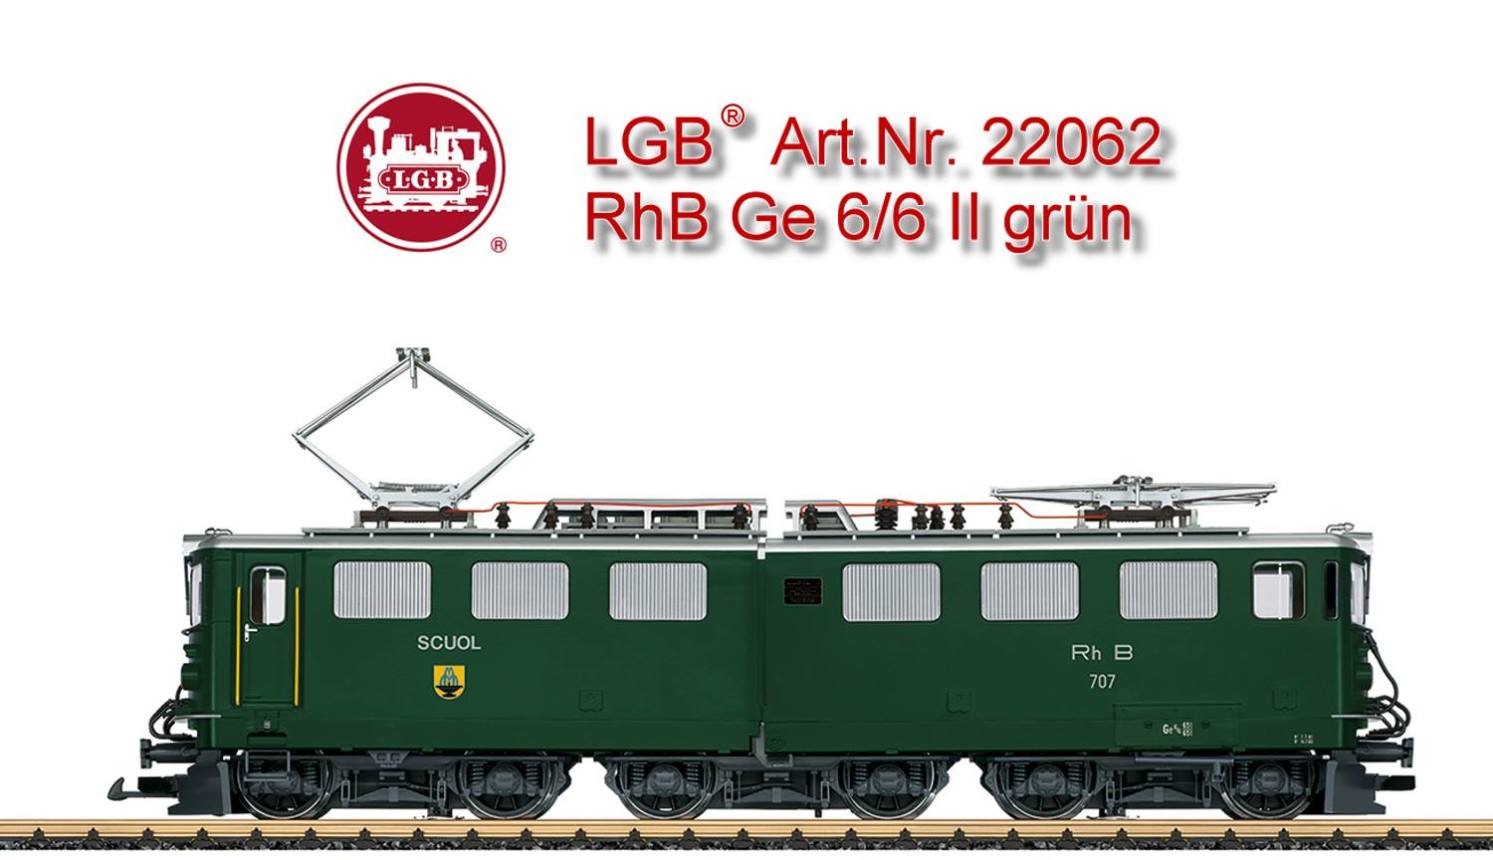 Angebot: LGB 22062 Ge 6/6 II in grün - solange der Vorrat reicht. 